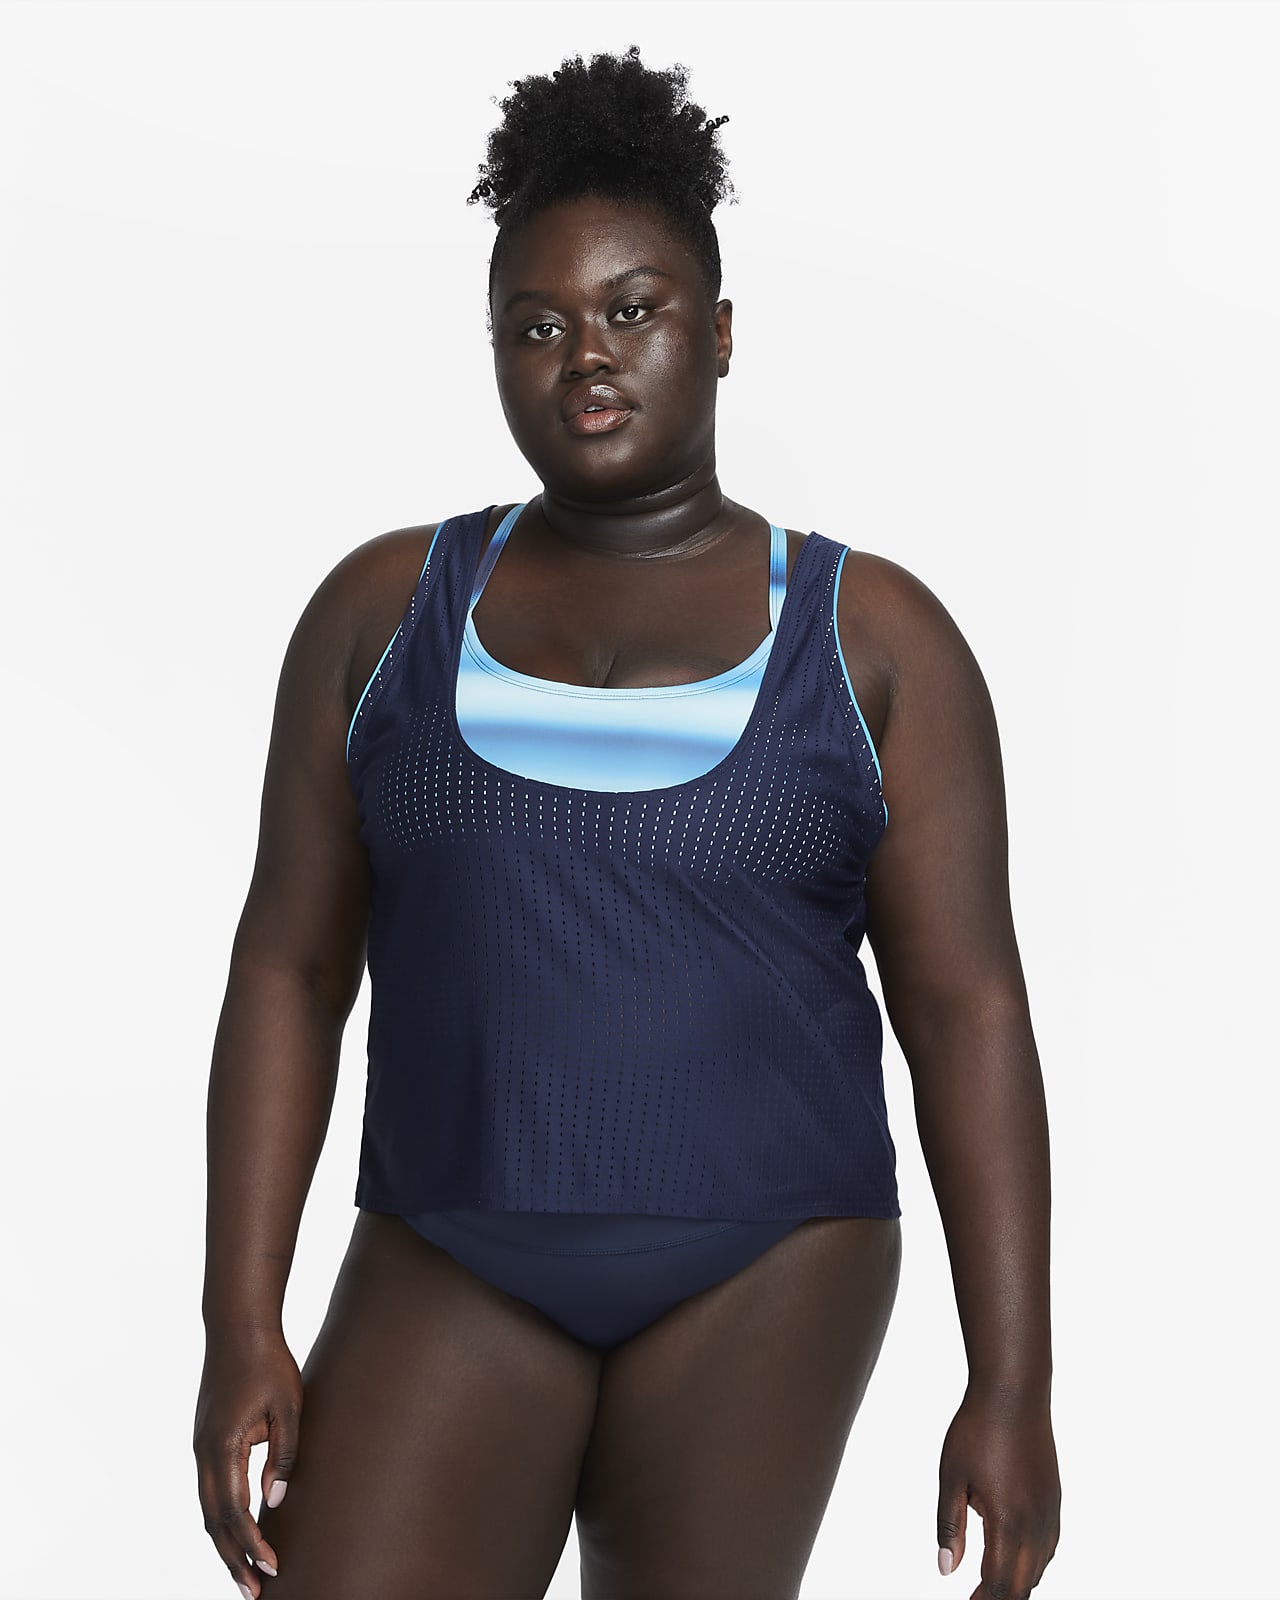 Nike Swim Women's Convertible Layered Tankini Top (Plus Size)